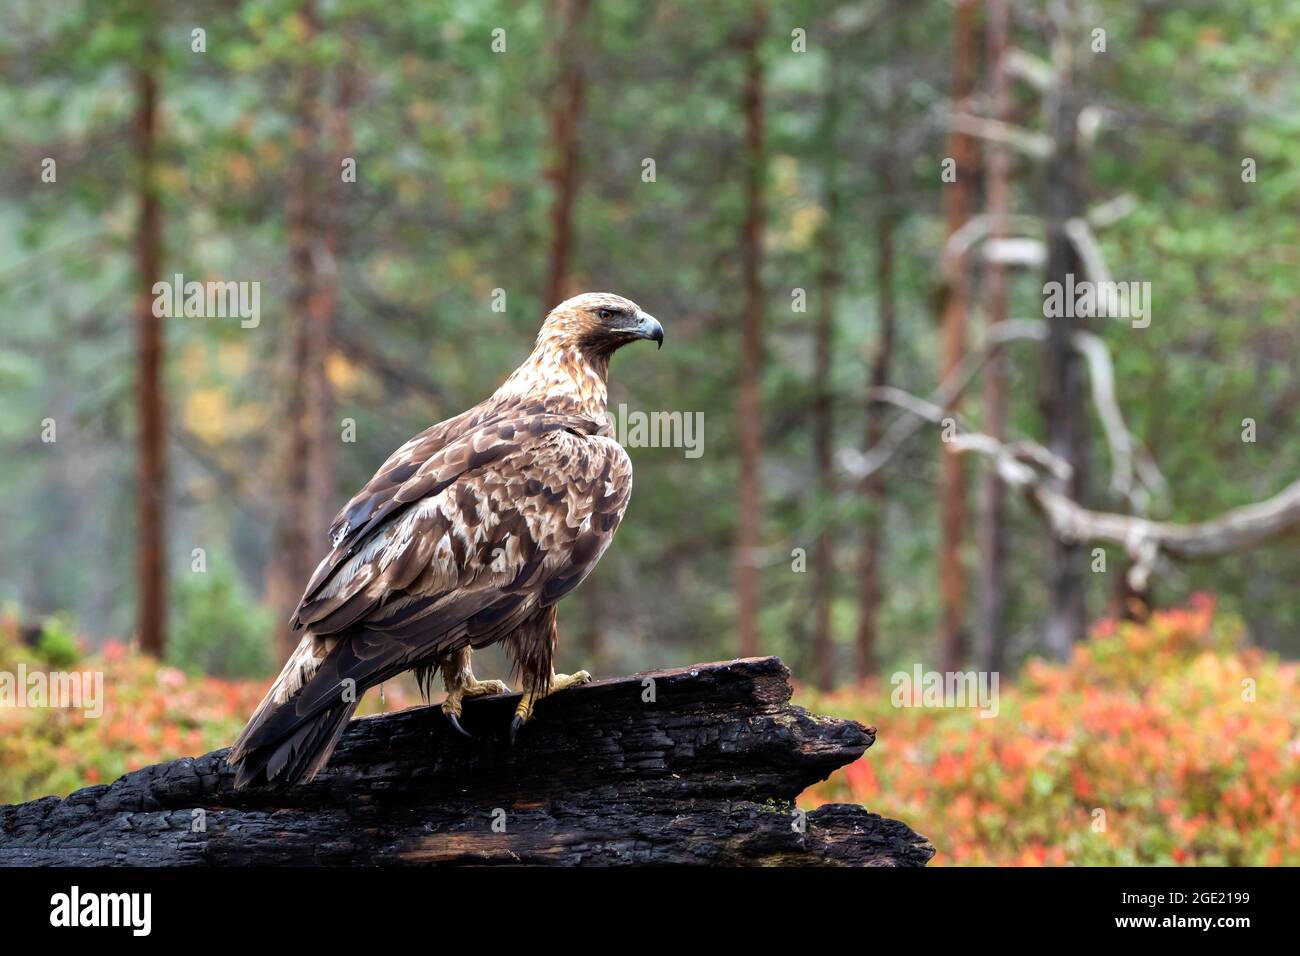 Erwachsener starker Greifvogelgrab Goldener Adler, Aquila chrysaetos, thronte während des Herbstlaubes im finnischen Taiga-Wald in Nordeuropa auf einem verbrannten Baumstamm Stockfoto